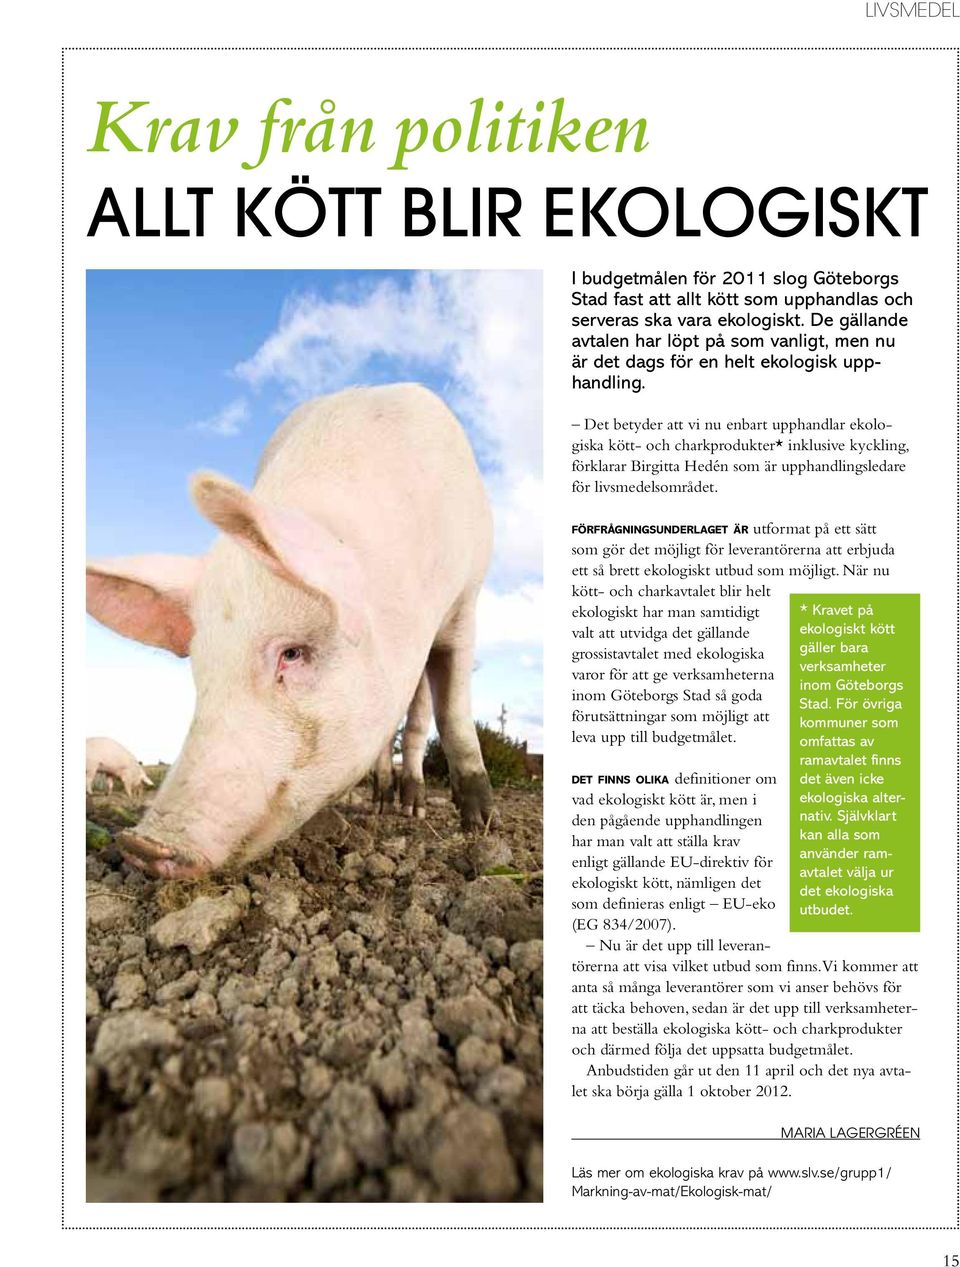 Det betyder att vi nu enbart upphandlar ekologiska kött- och charkprodukter* inklusive kyckling, förklarar Birgitta Hedén som är upphandlingsledare för livsmedelsområdet.